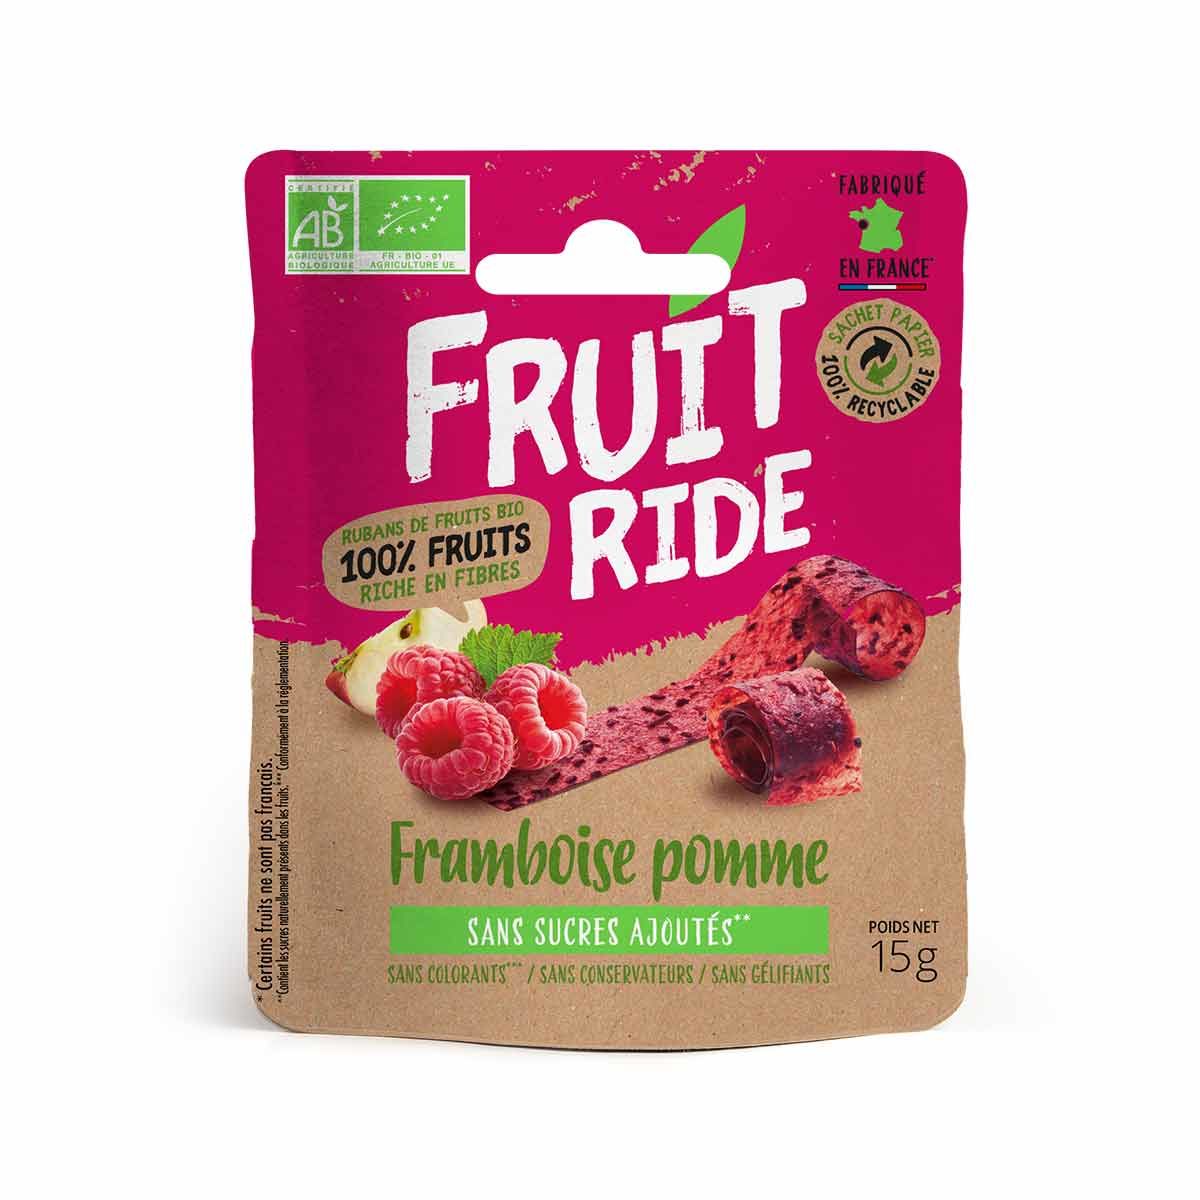 Cuirs de fruits bio Fruit Ride - Framboise, pomme